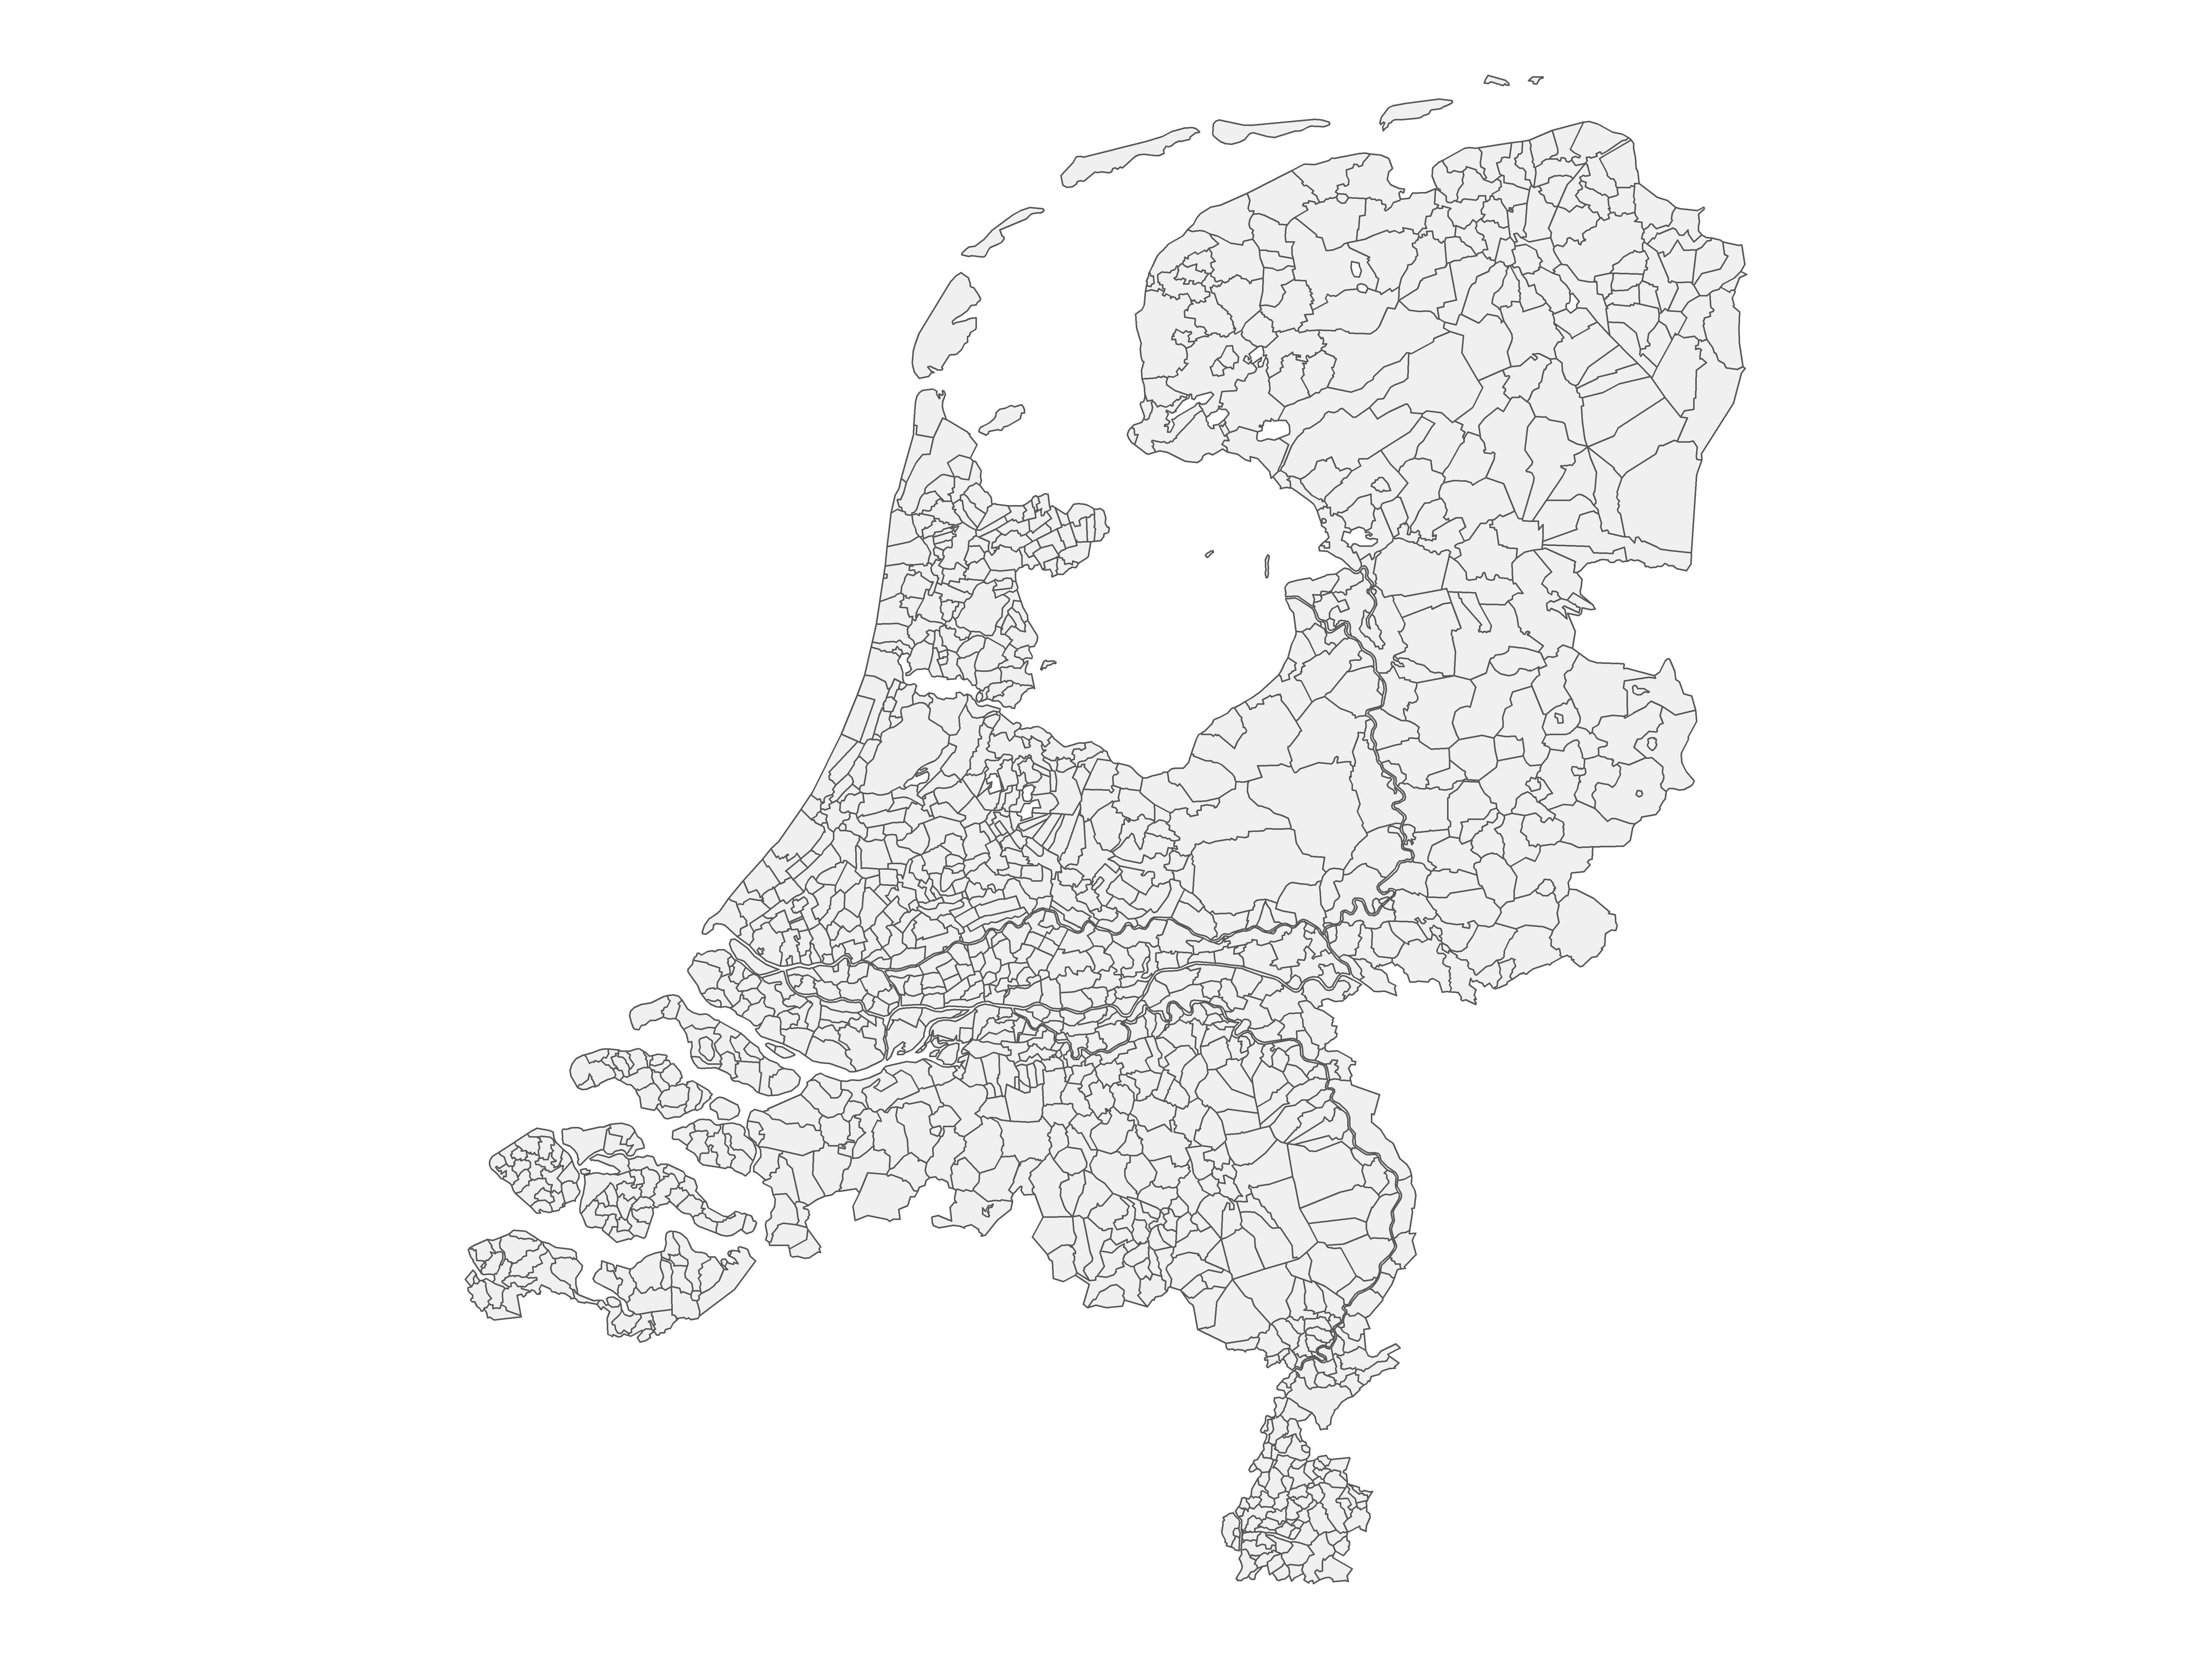 HDNG - gemeentenkaart van Nederland voor 1940